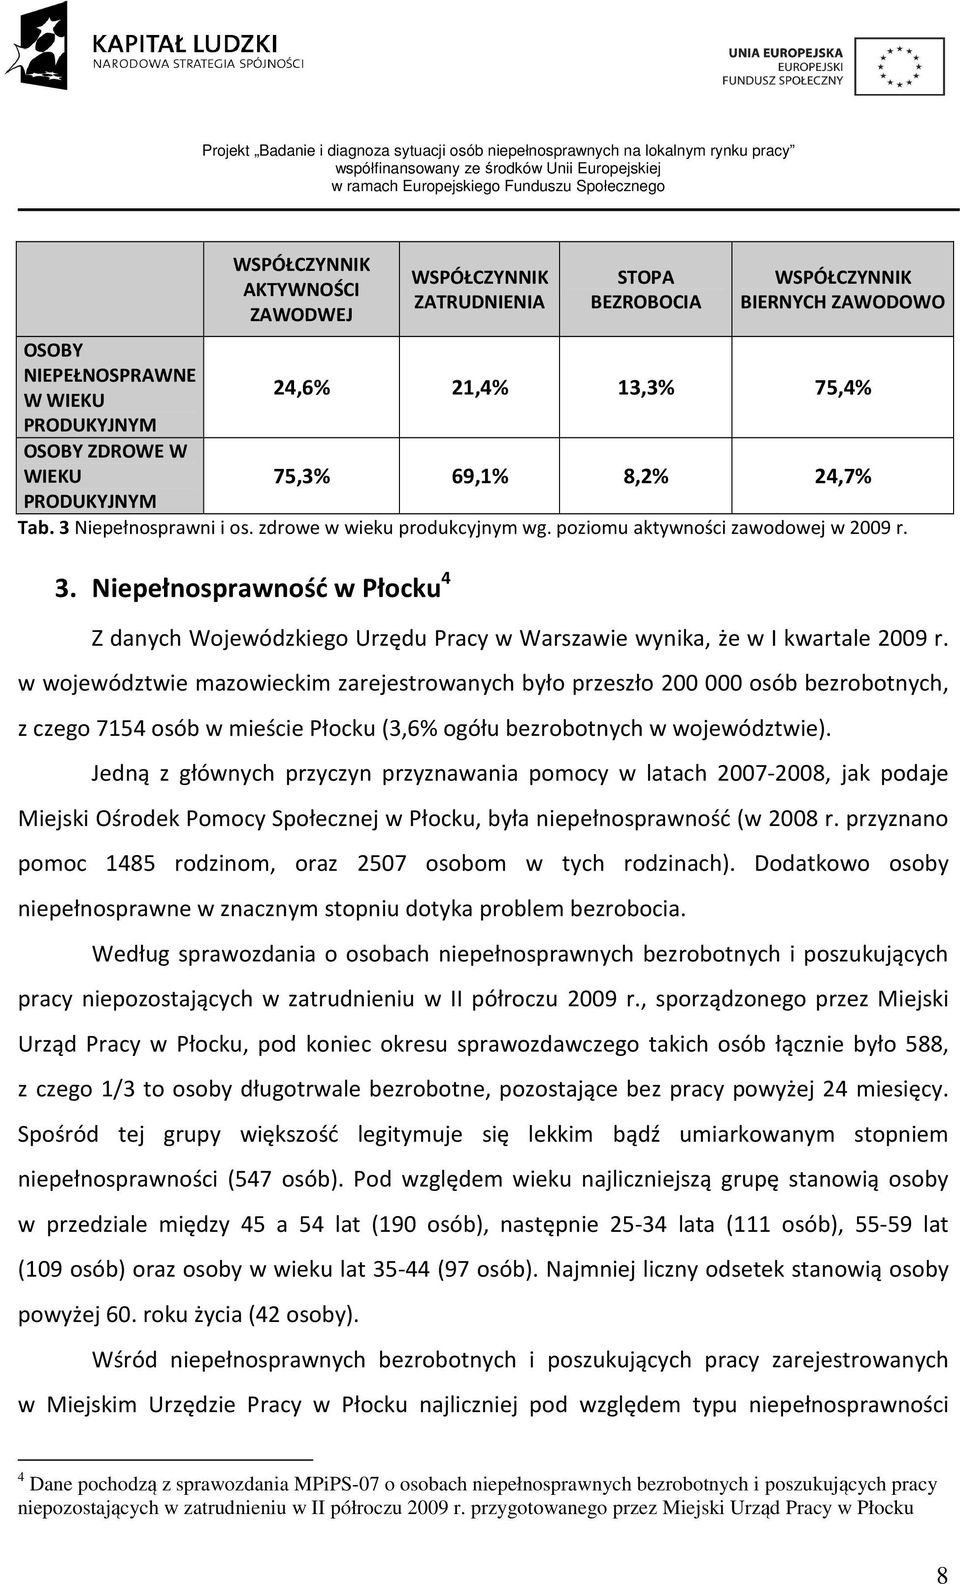 w województwie mazowieckim zarejestrowanych było przeszło 200 000 osób bezrobotnych, z czego 7154 osób w mieście Płocku (3,6% ogółu bezrobotnych w województwie).